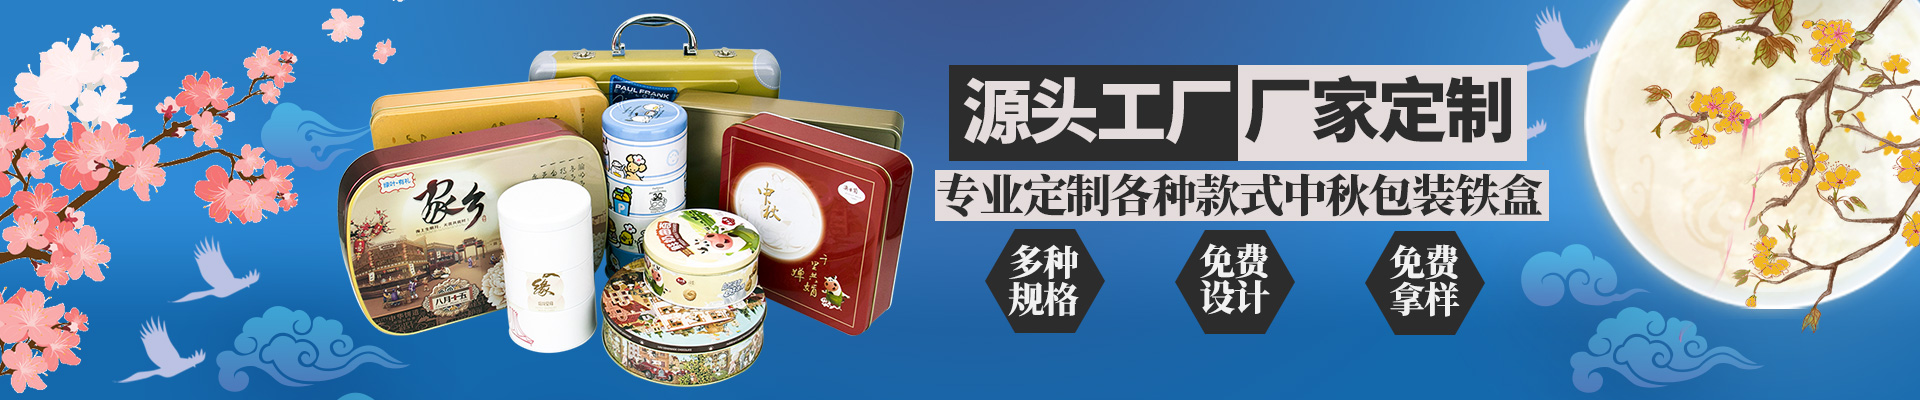 月饼铁盒月饼JS金沙(中国)股份有限公司官网小横图